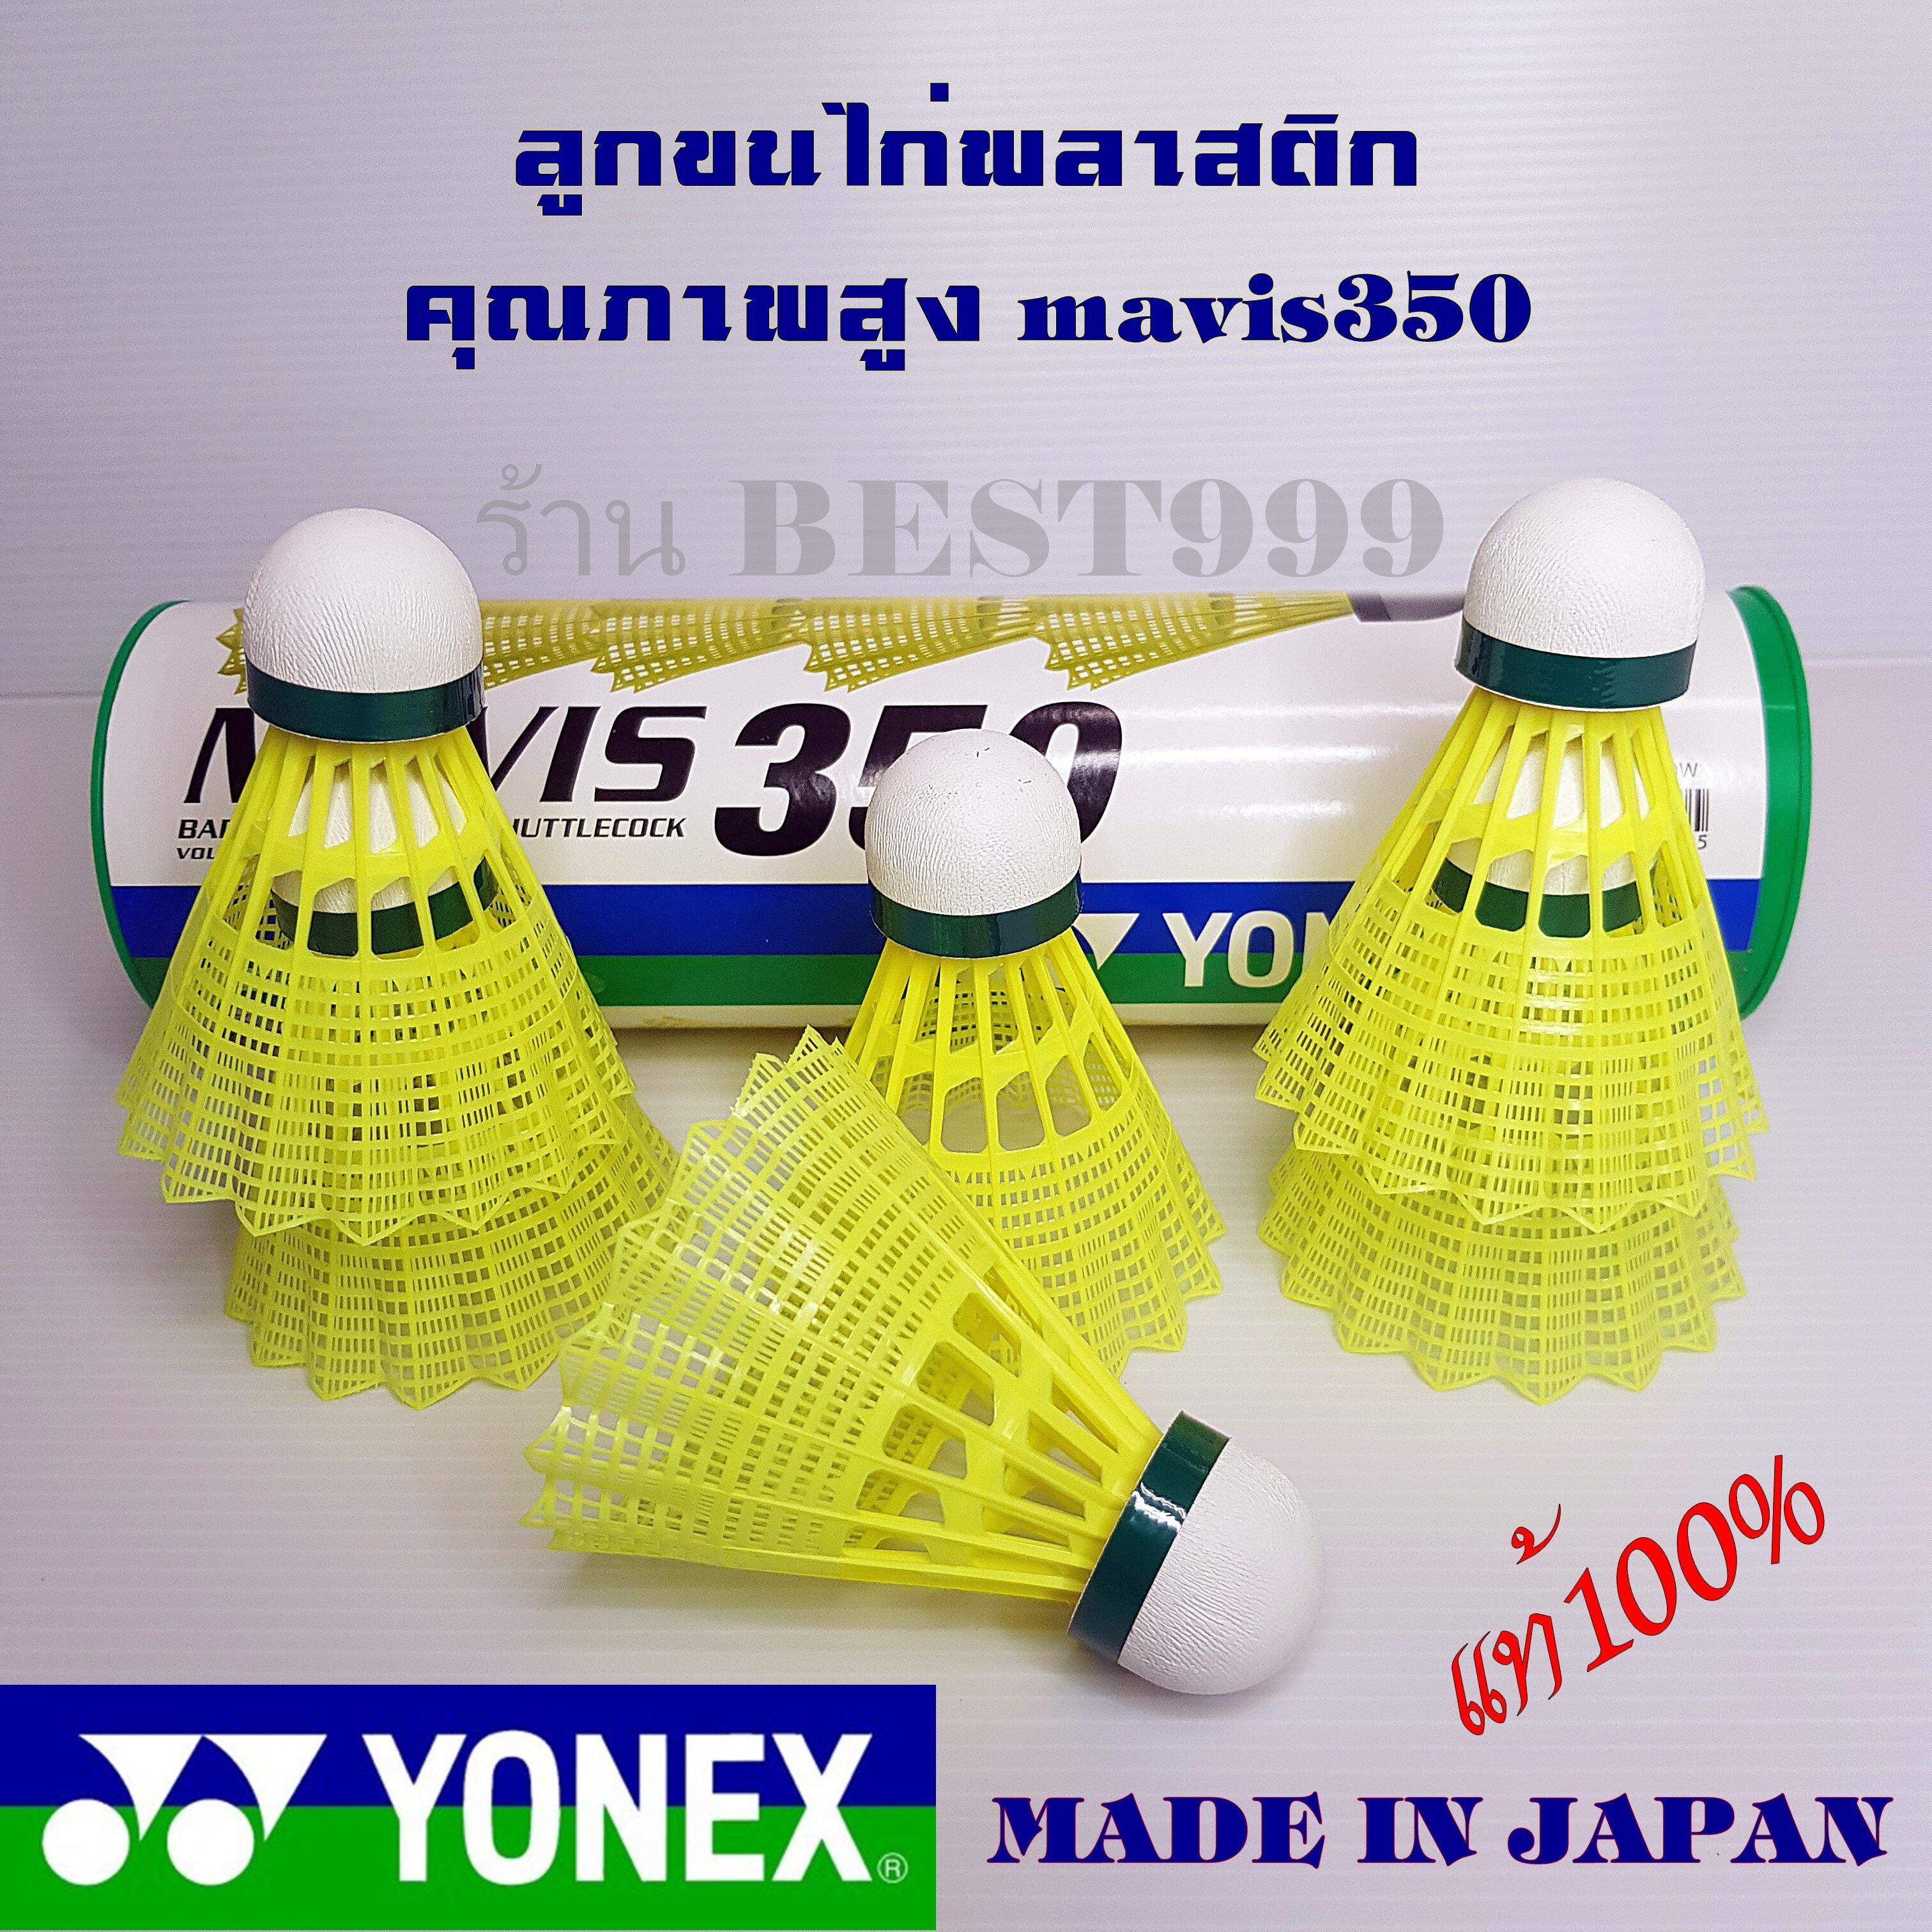 รูปภาพเพิ่มเติมเกี่ยวกับ ลูกแบดมินตัน YONEX รุ่น MAVIS 350 แท้100% (6ลูก/1หลอด) นำเข้าจากญี่ปุ่น ลูกขนไก่คุณภาพสูง ลูกแบดมินตันพลาสติก ลูกแบด ขนไก่ ลูกแบดมินตัน badminton ball